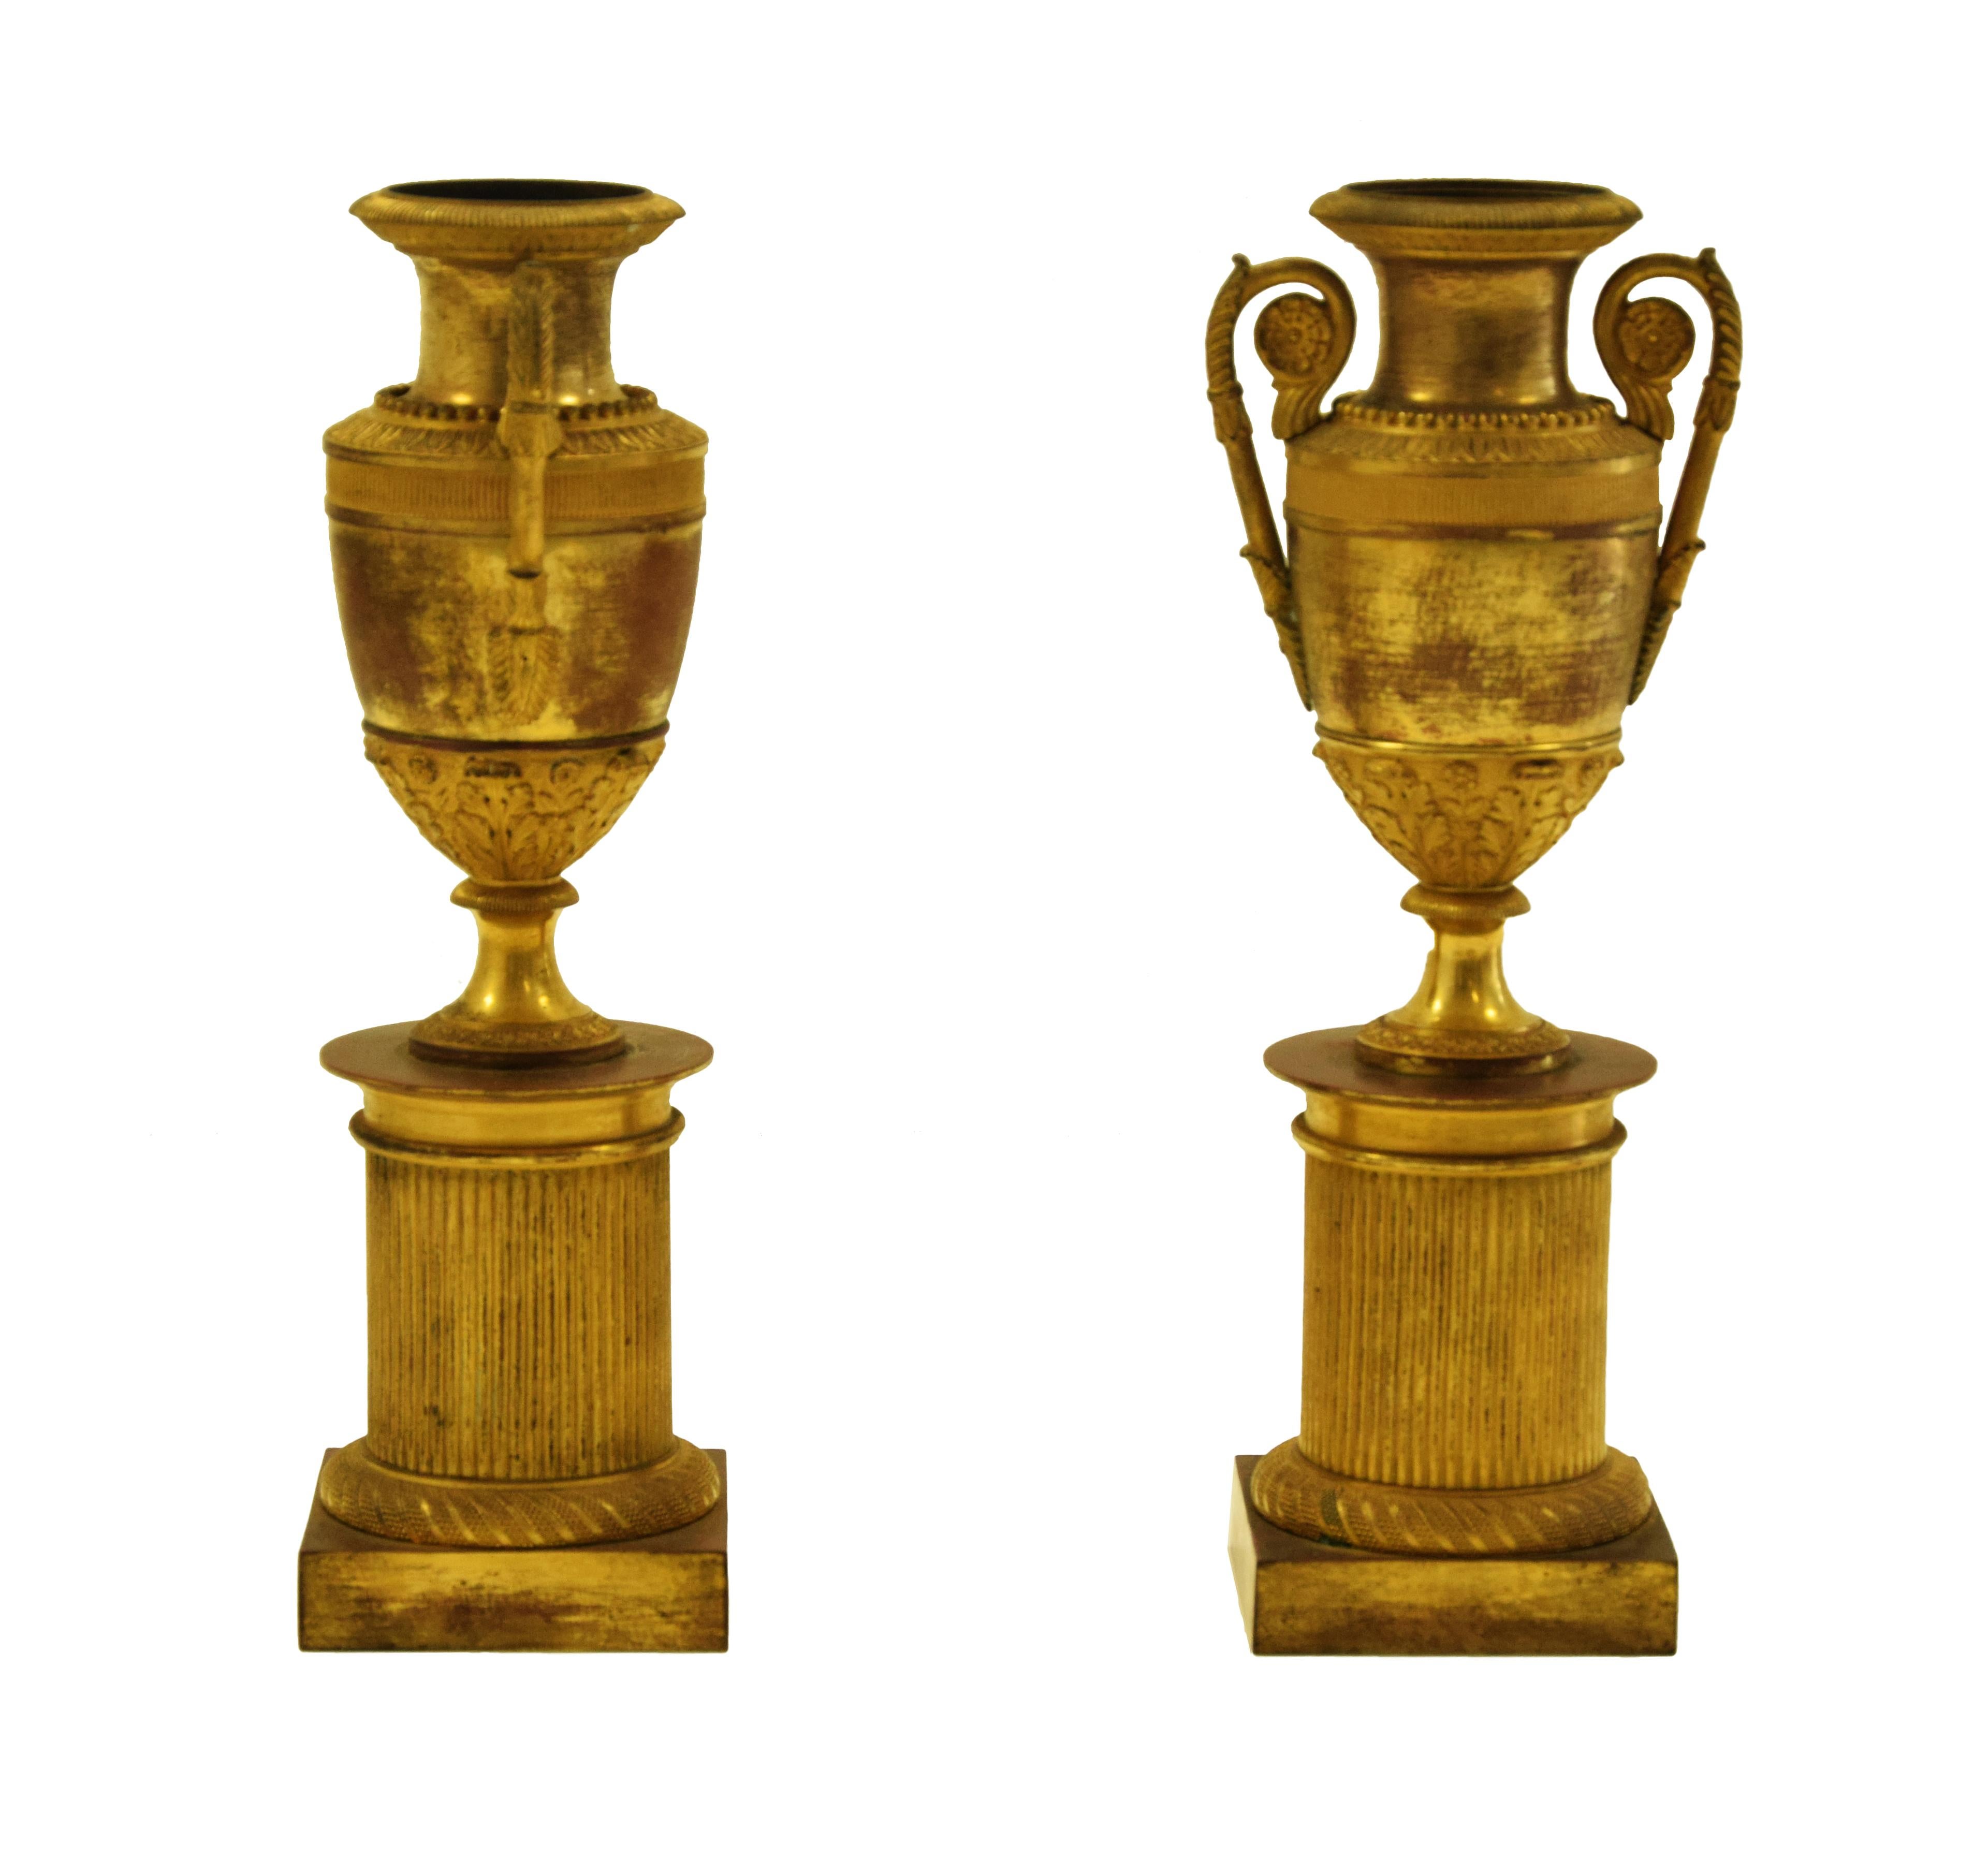 Das Vasenpaar auf Sockel ist ein originelles Dekorationsobjekt aus der zweiten Hälfte des 19. Jahrhunderts.

Original vergoldete Bronze.

Antike Goldpatina.

Neuwertiger Zustand.

Schönes Paar Vasen mit einem zylindrischen geriffelten Basis